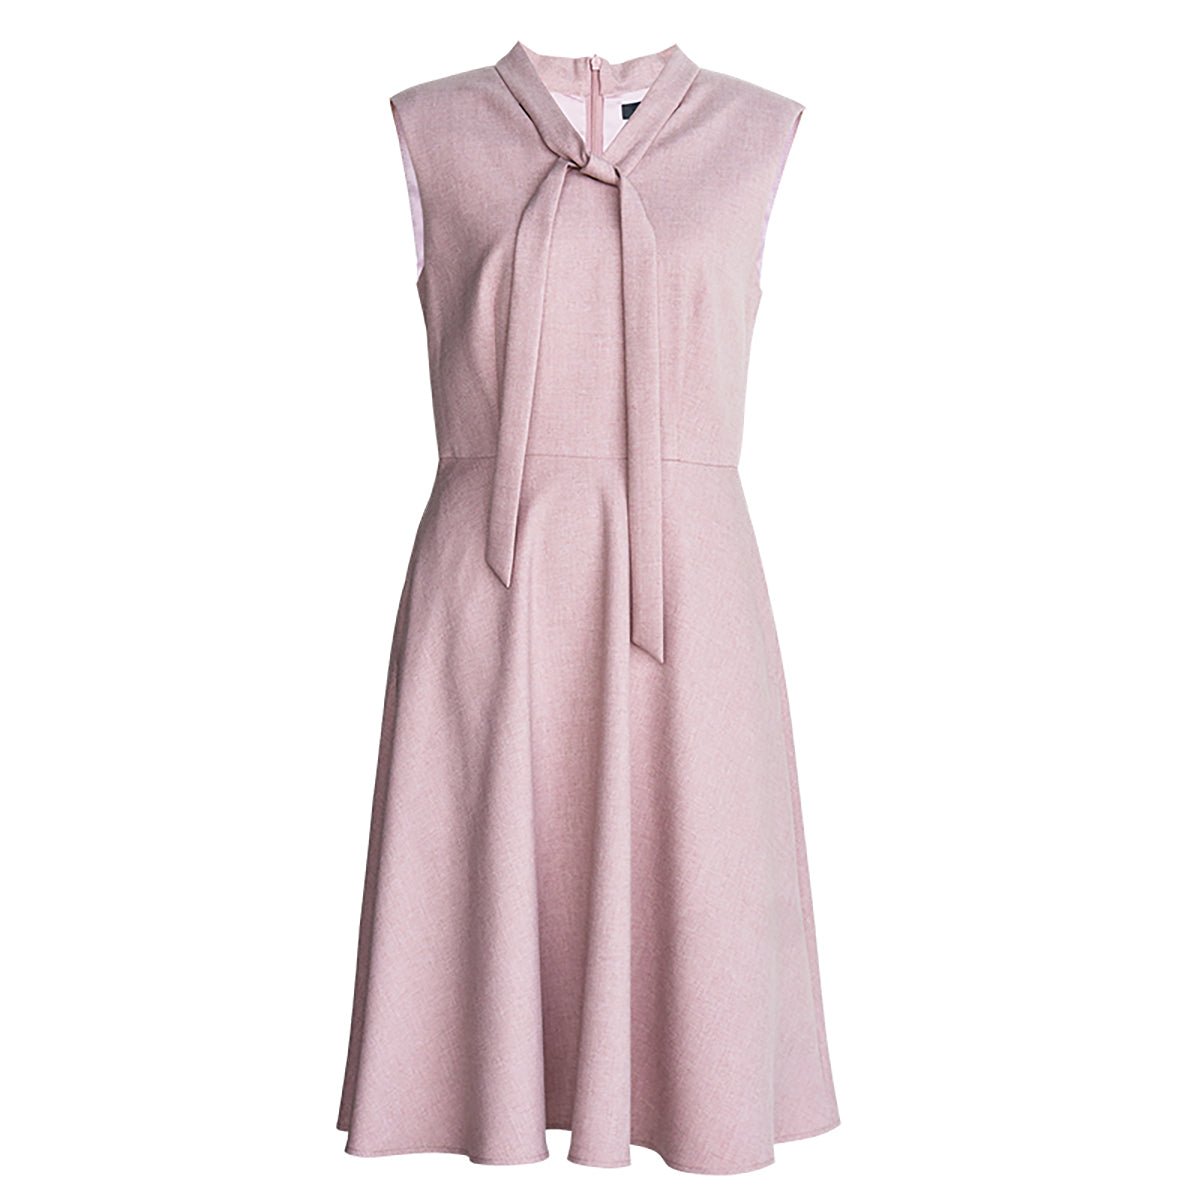 Sleeveless Pink Modern Fashion Dress